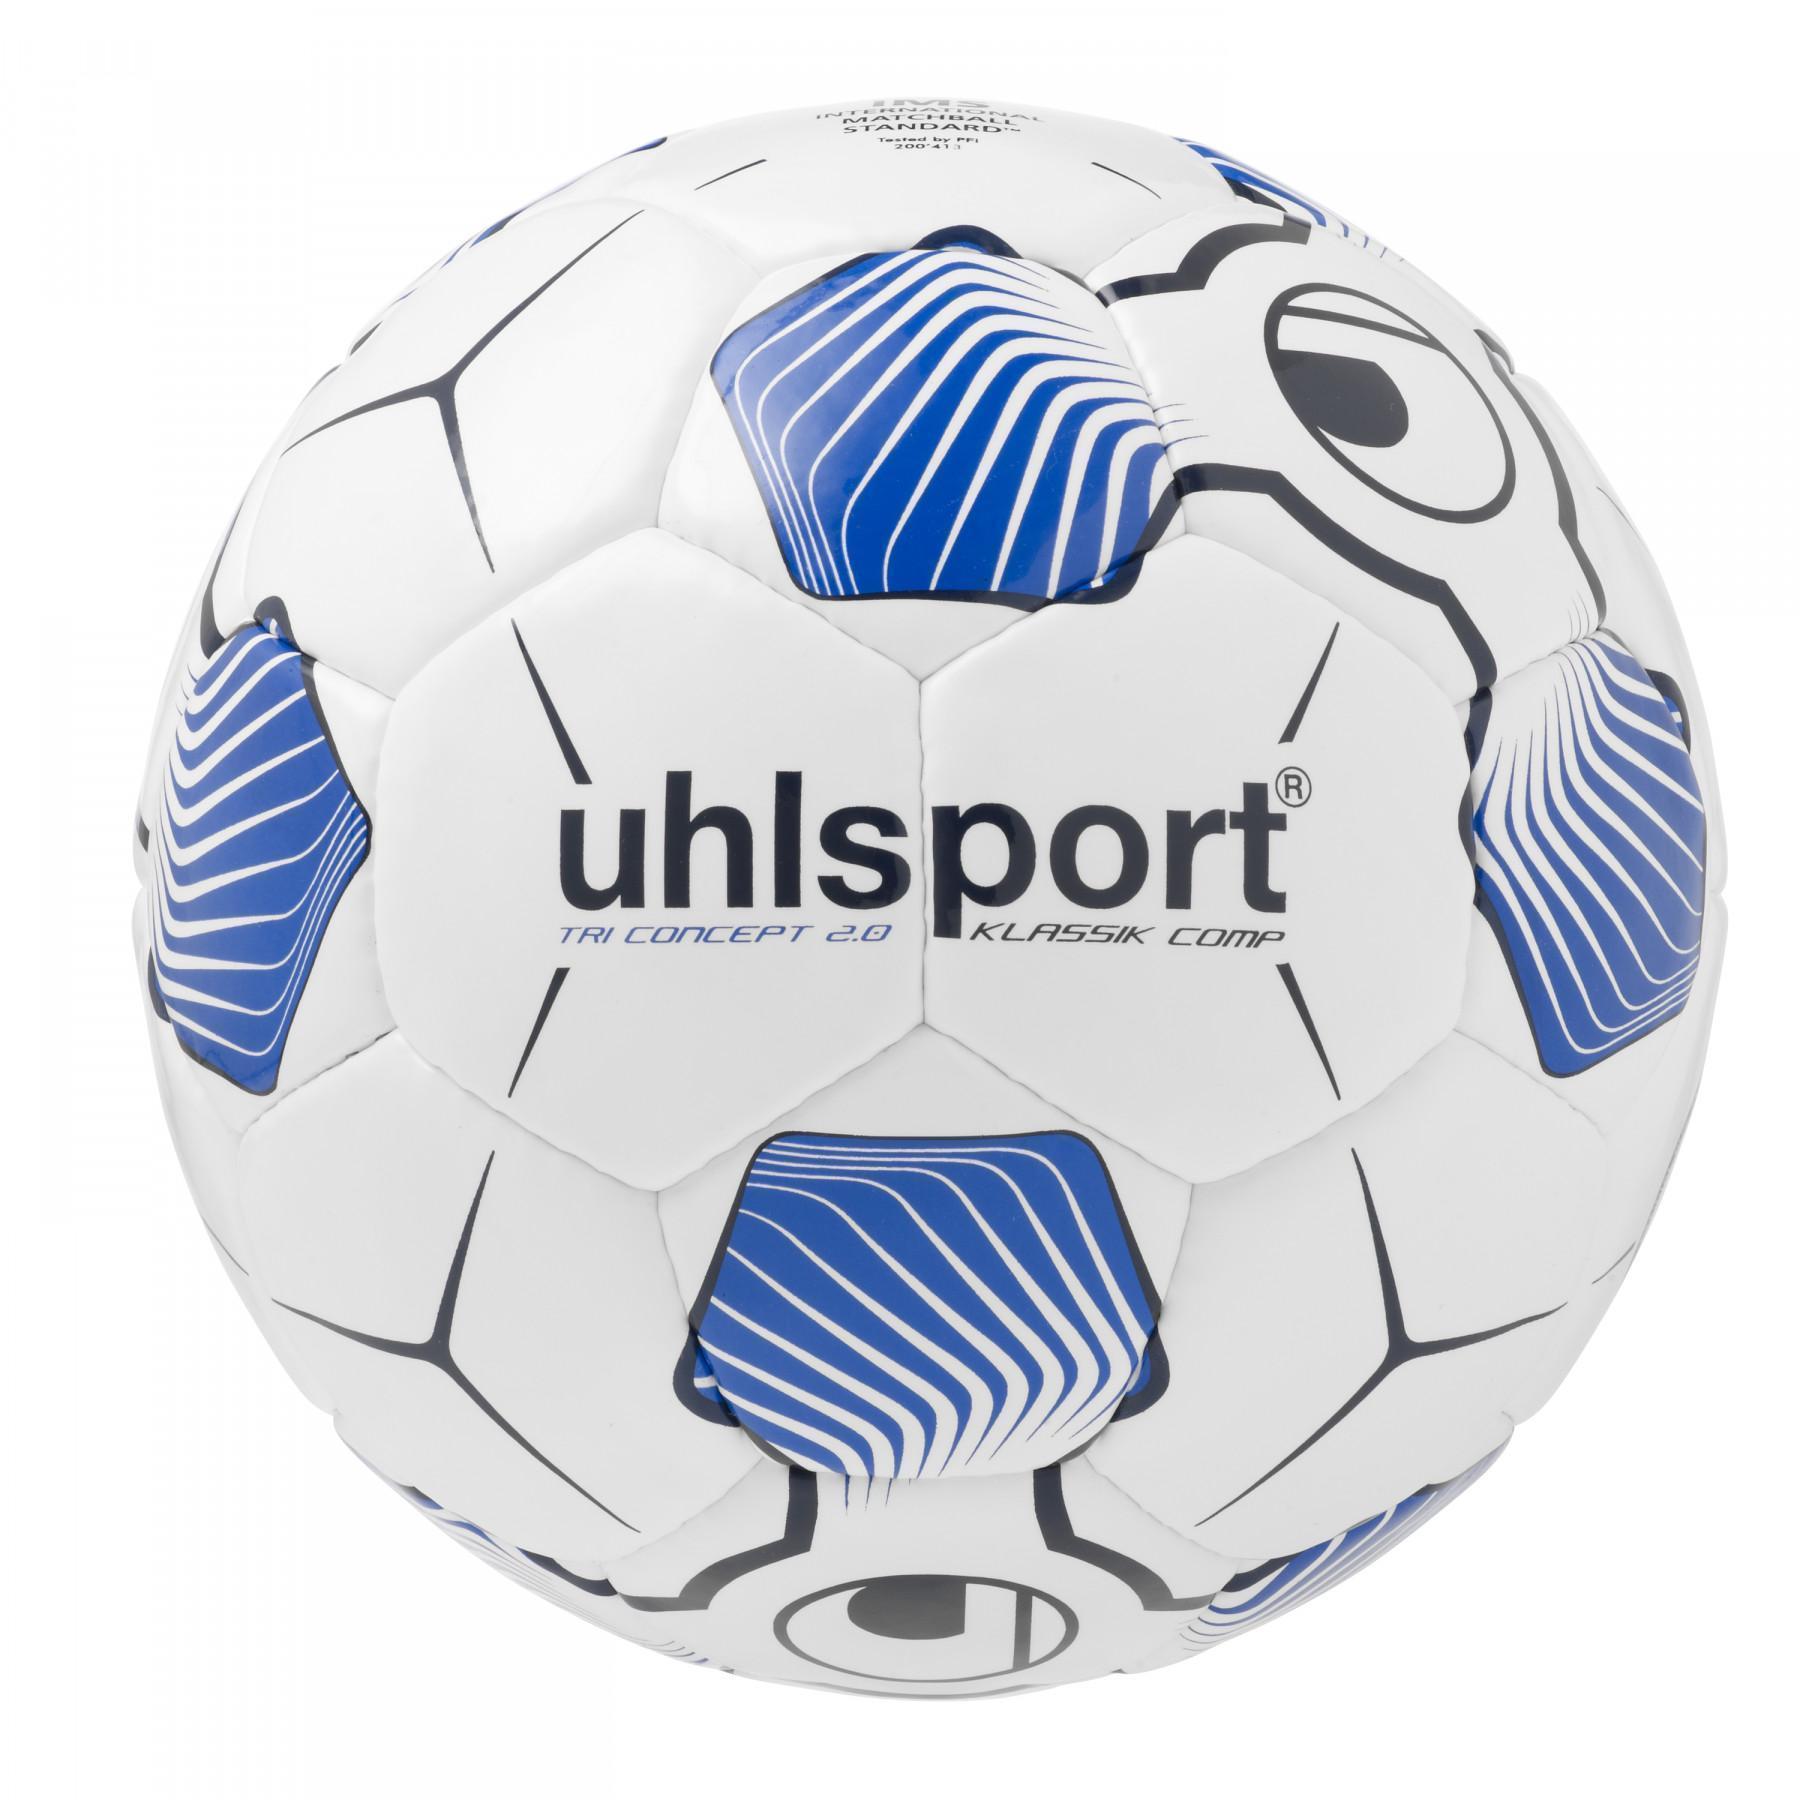 Pallone Uhlsport Tri Concept 2.0 Klassik Comp